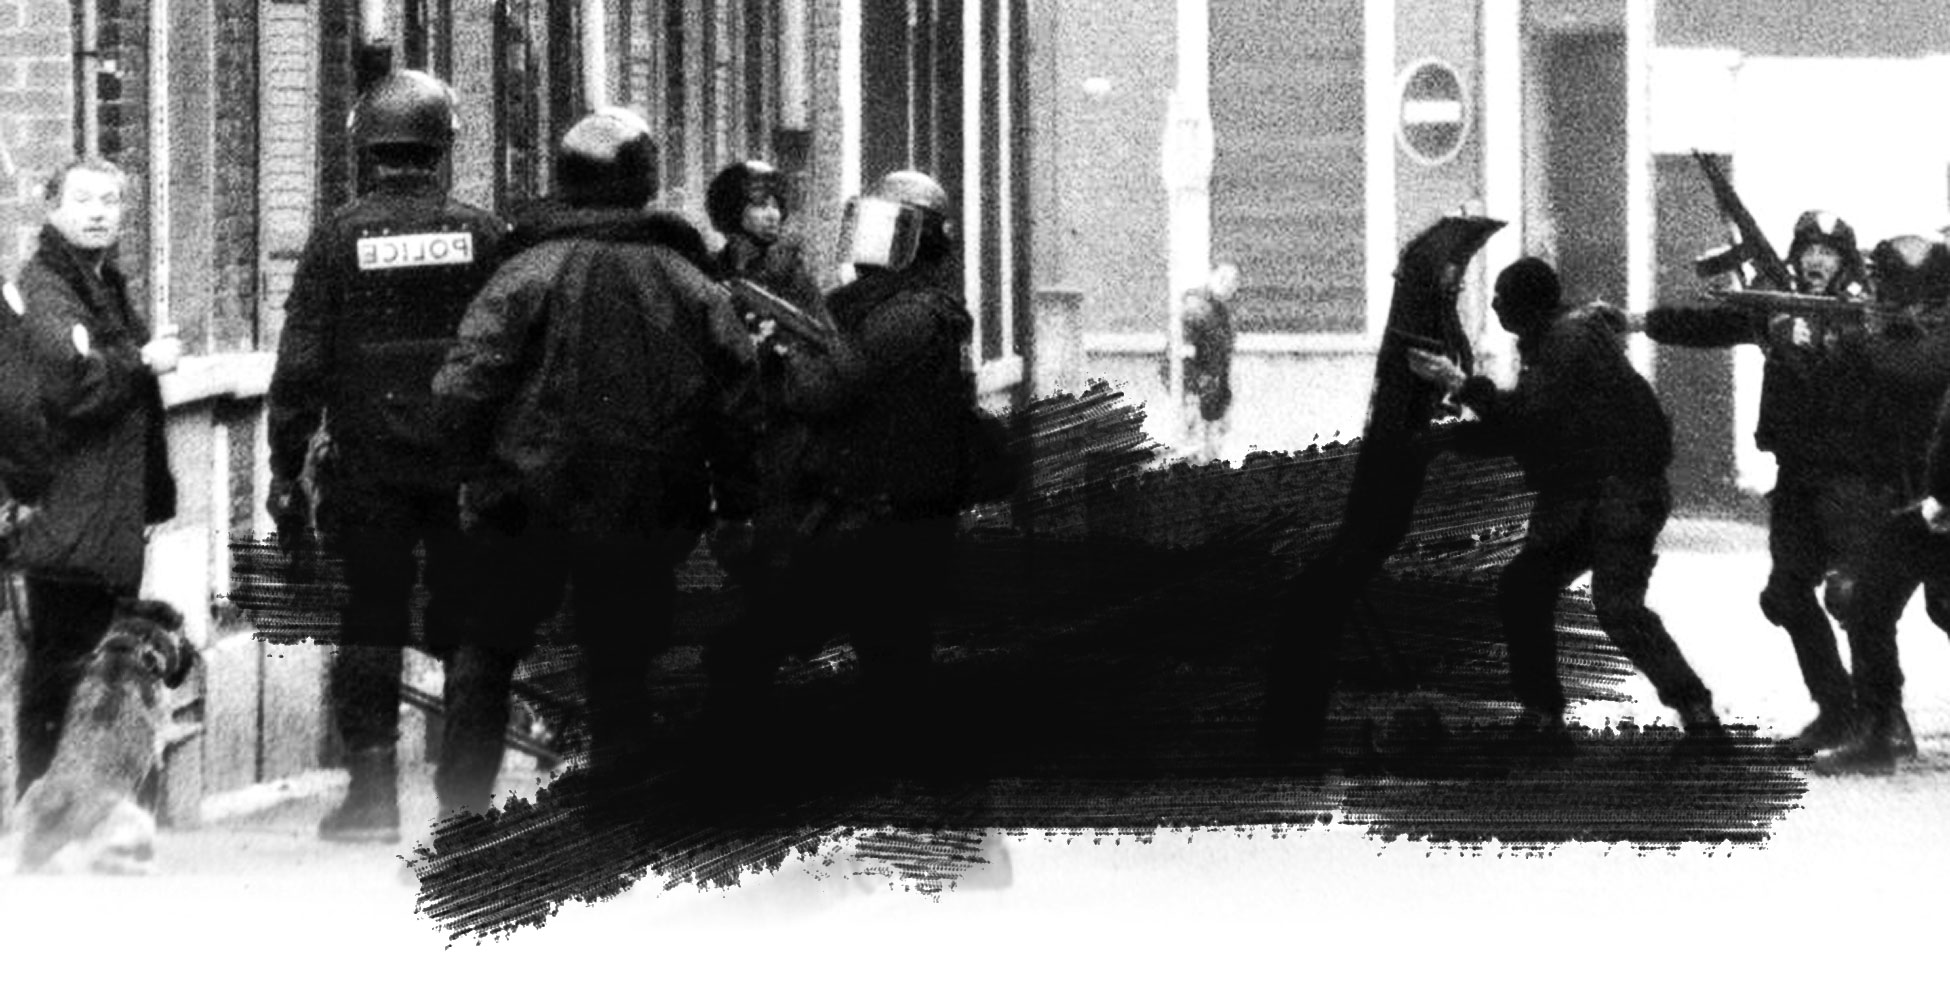 Il y a 20 ans, le Raid lançait l’assaut contre le “Gang de Roubaix”, charnière du terrorisme en France